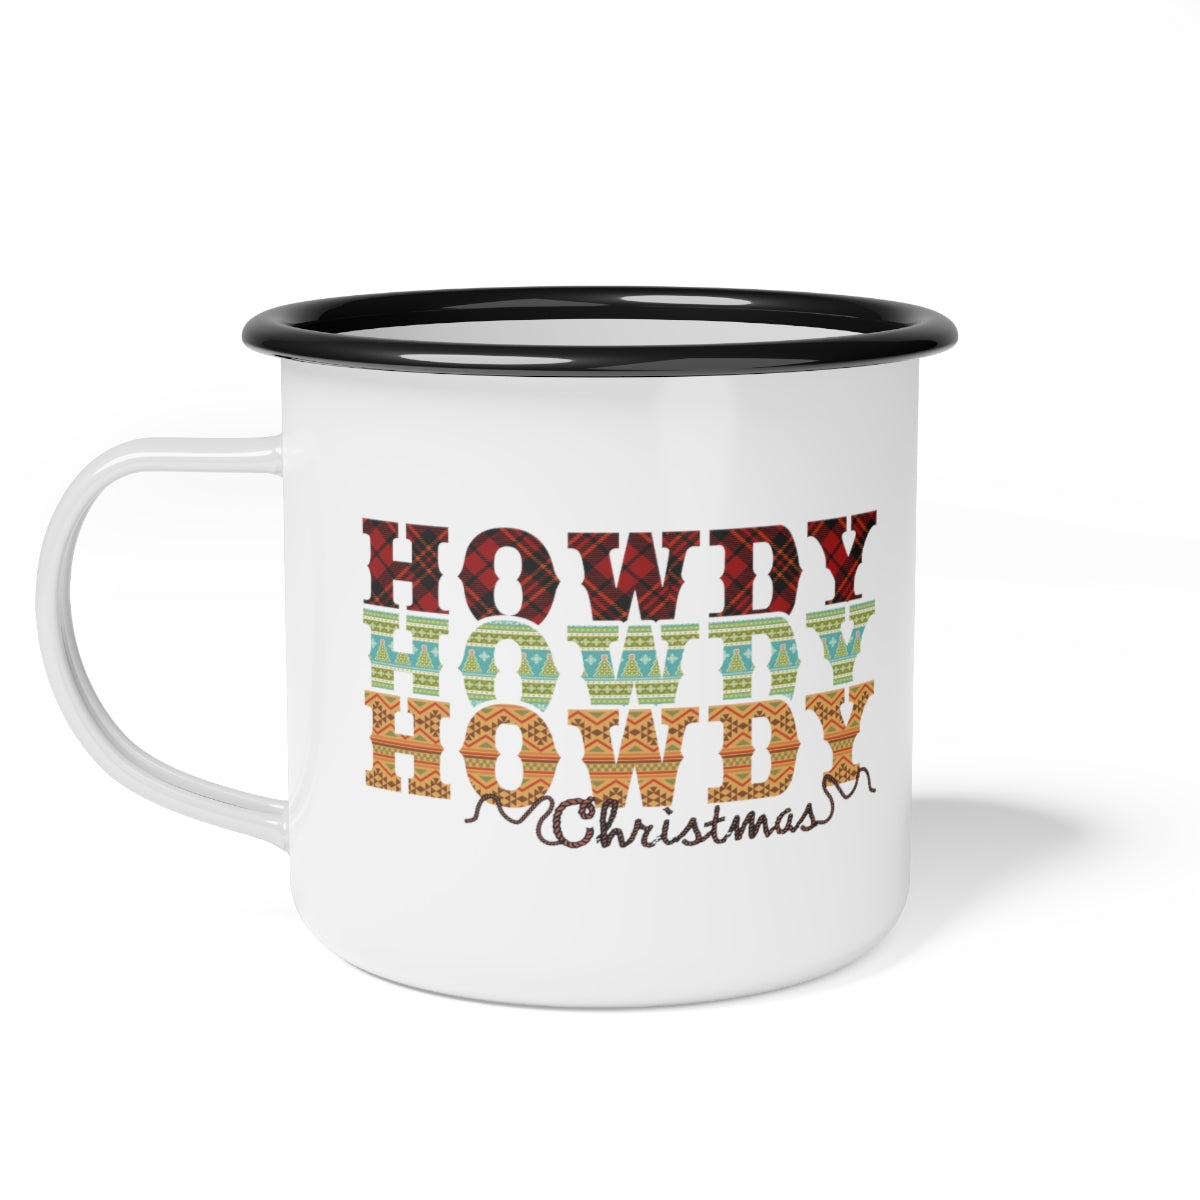 Howdy Christmas Plaid and Rope Black Rim Enamel Camp Cup Mug